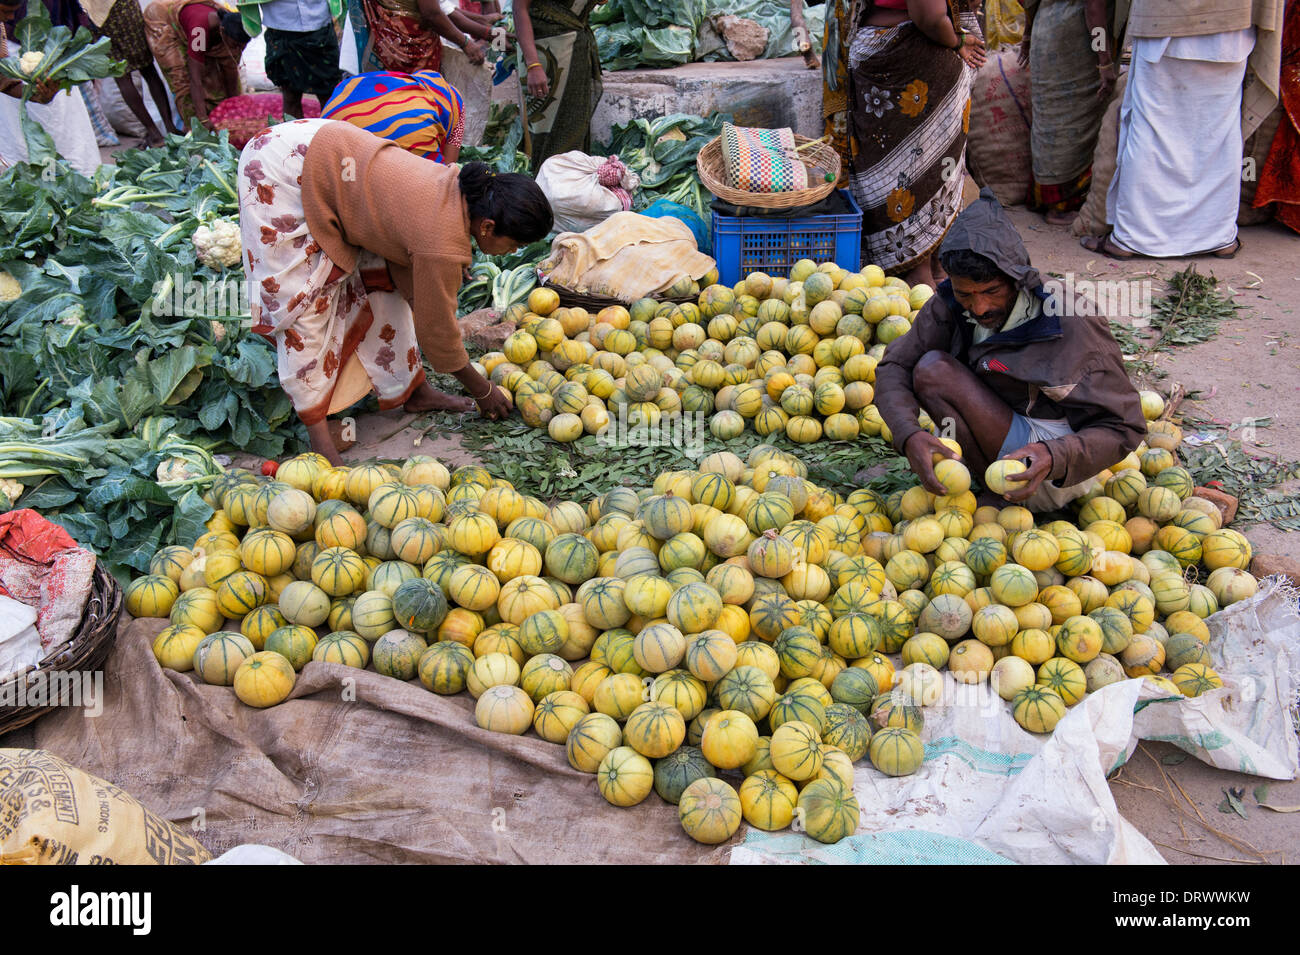 Indian market traders sorting fresh melons at an Indian market. Andhra Pradesh, India Stock Photo